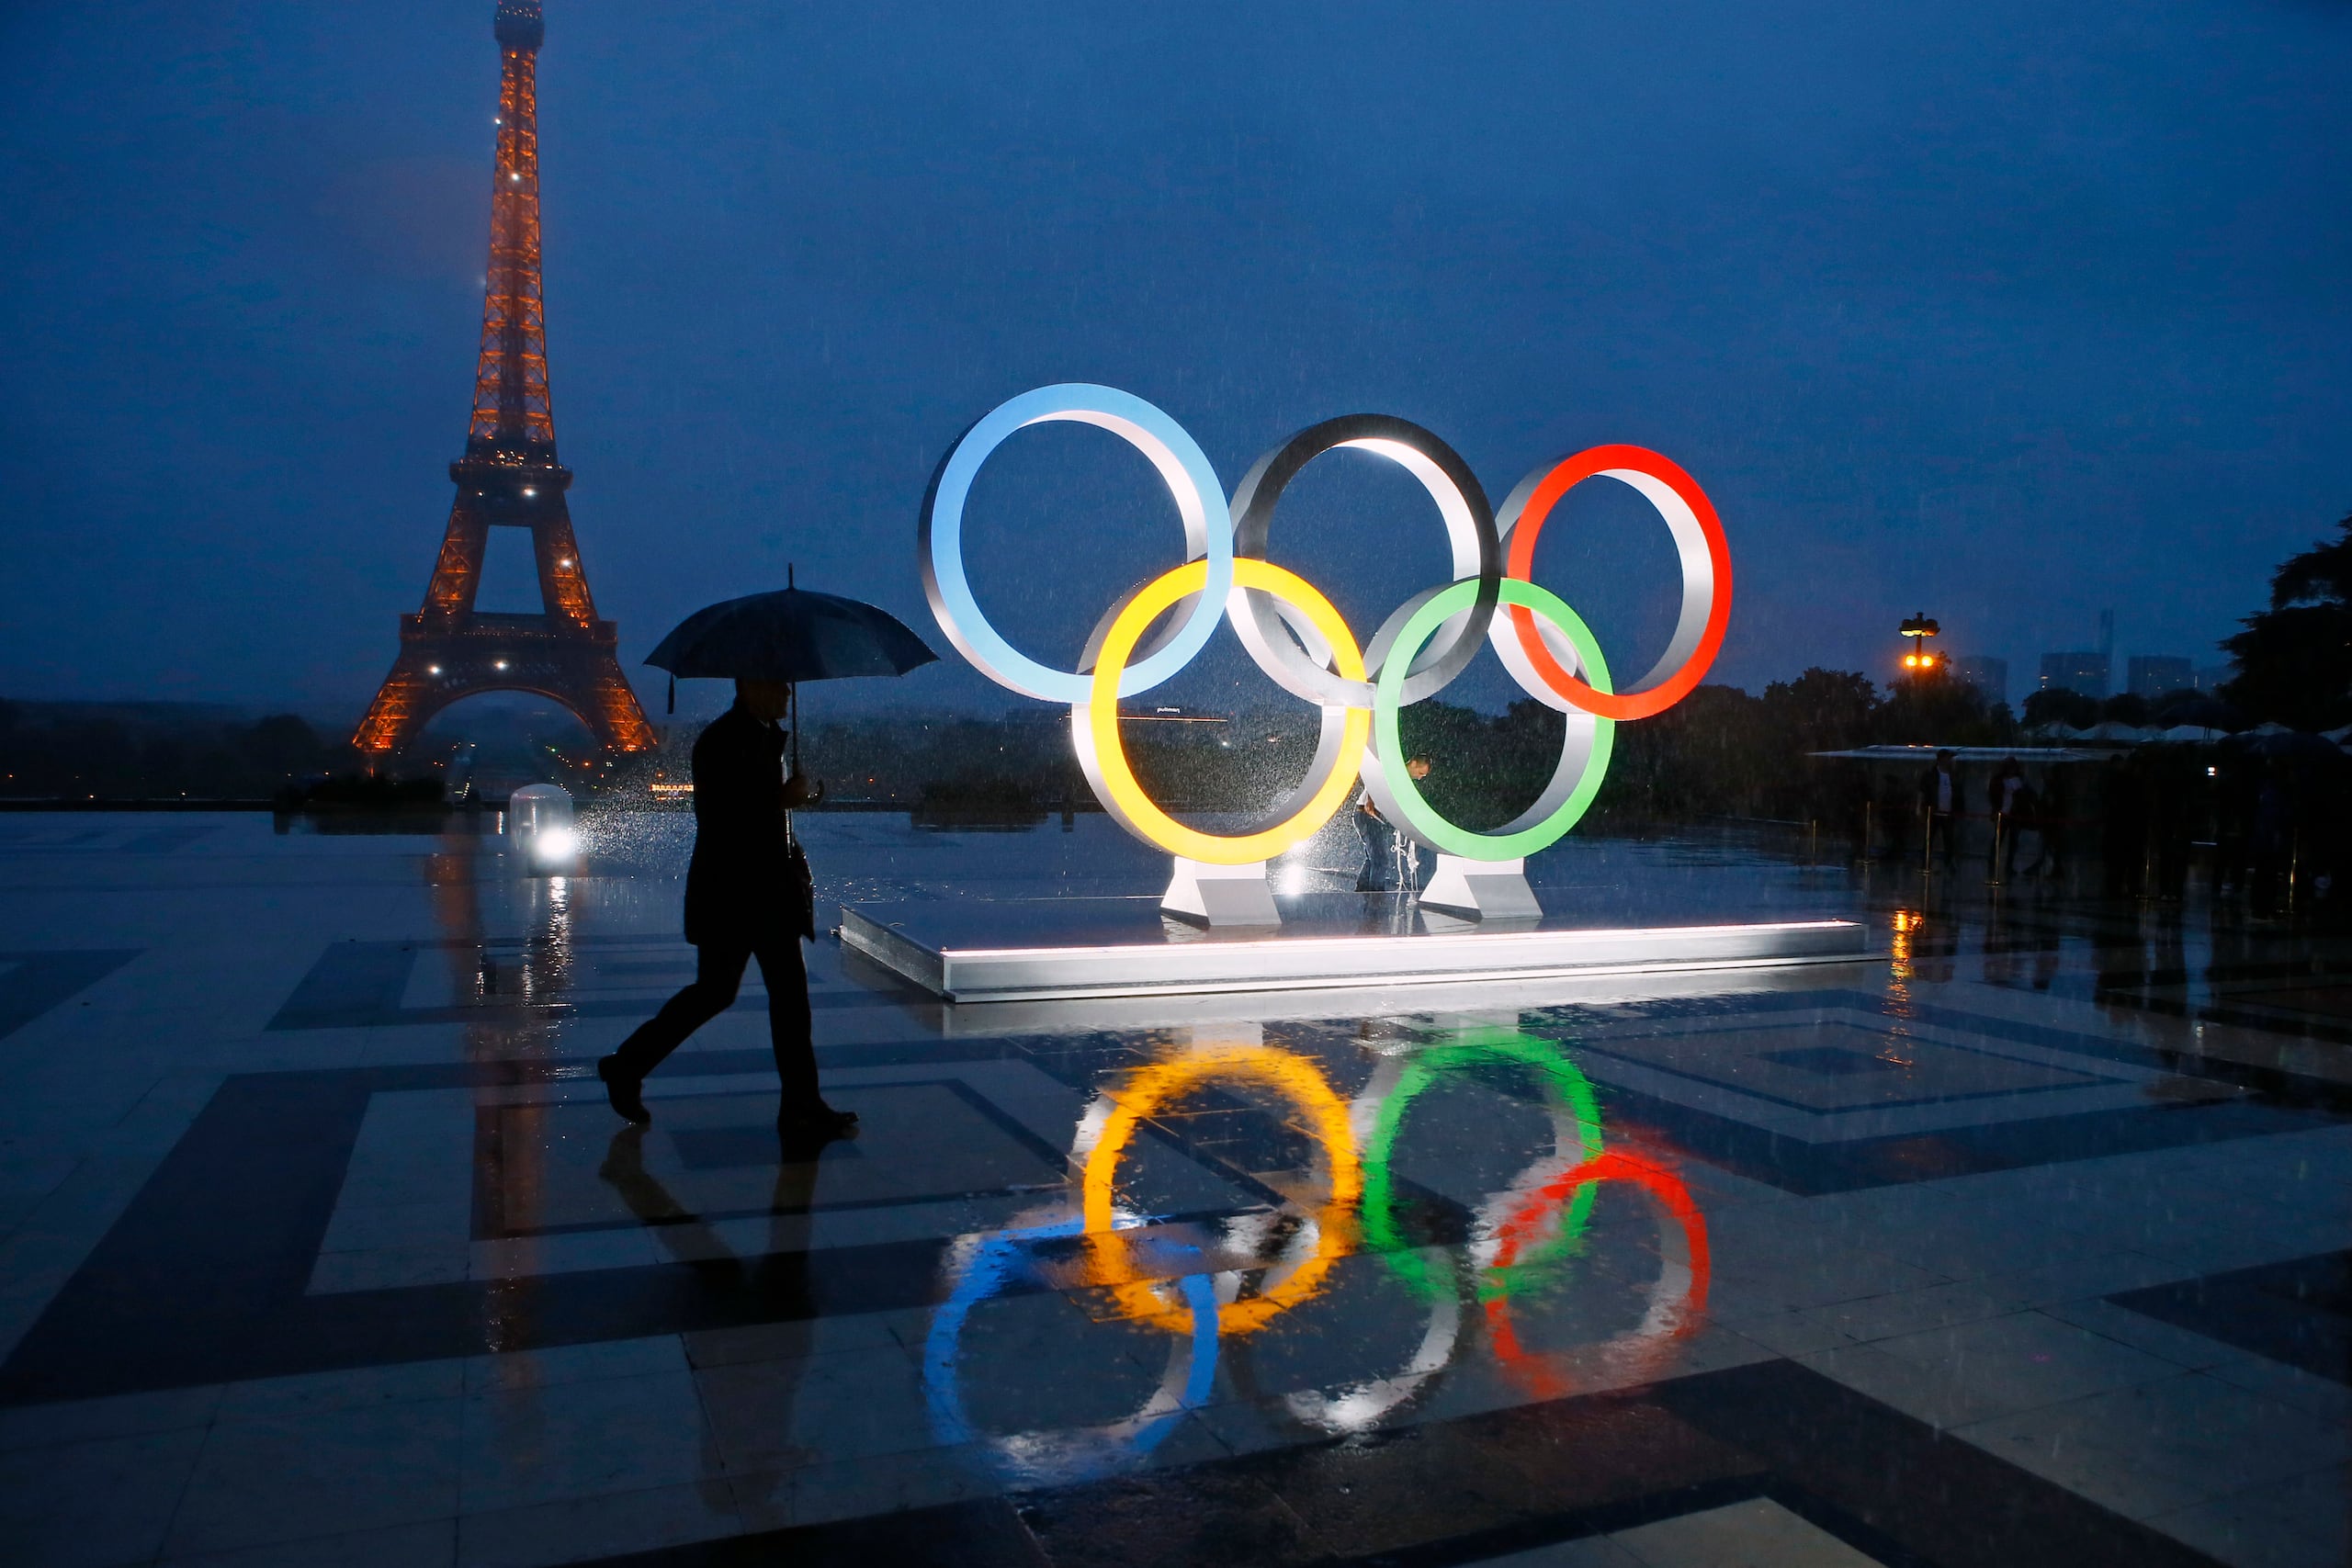 Los aros olímpicos aparecen aquí sobre la Plaza de Trocadero, considerada un mirador de la Torre Eiffel y el Río Sena. 